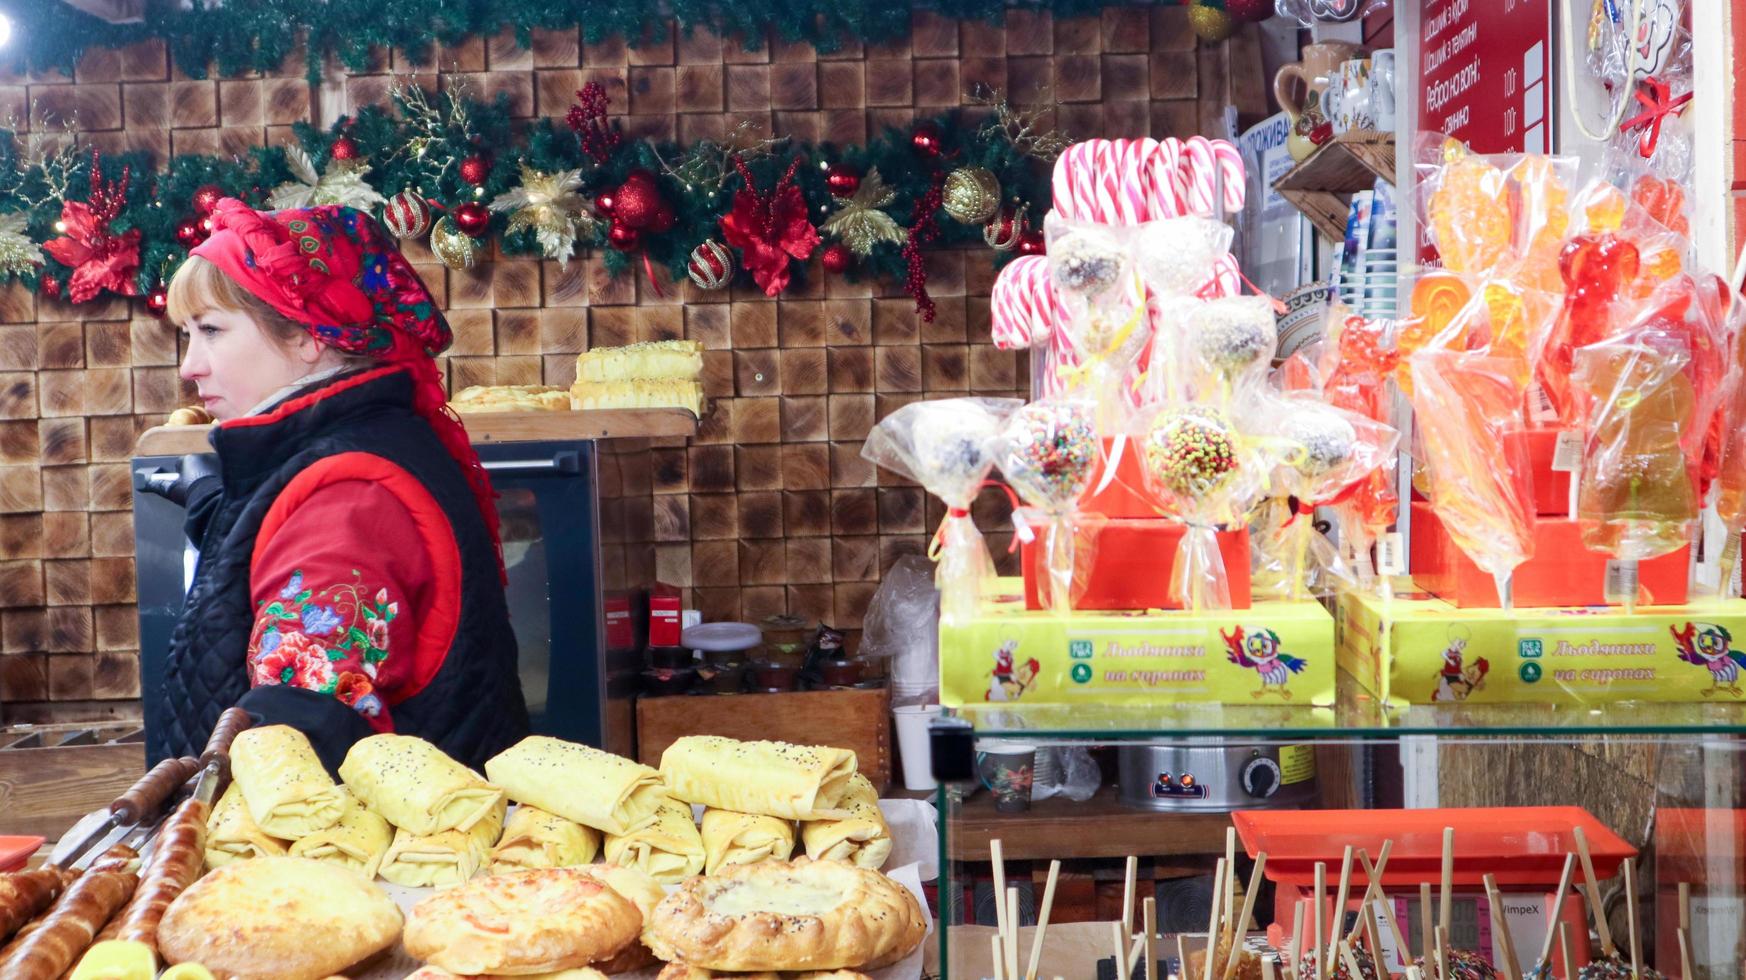 oekraïne, kiev - 3 januari 2019. kiosken met eten en souvenirs op de kerstmarkt. verkoop van snoep op de kerstmarkt, zoete kerstballen op vitrine op de kermis verkoop foto